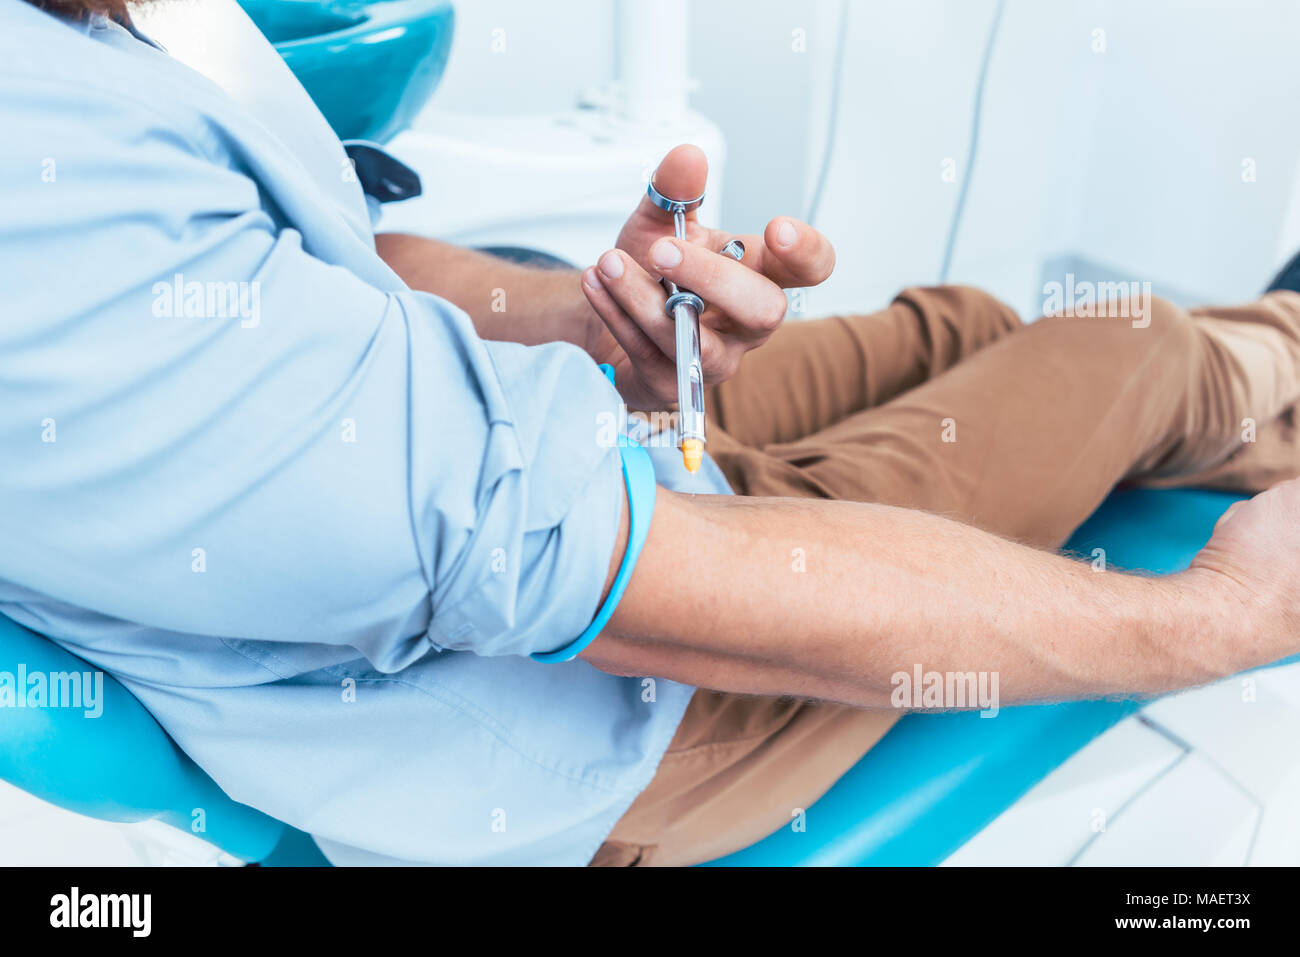 Patient à l'aide d'un anesthésique dentaire seringue pour injecter lui-même Banque D'Images